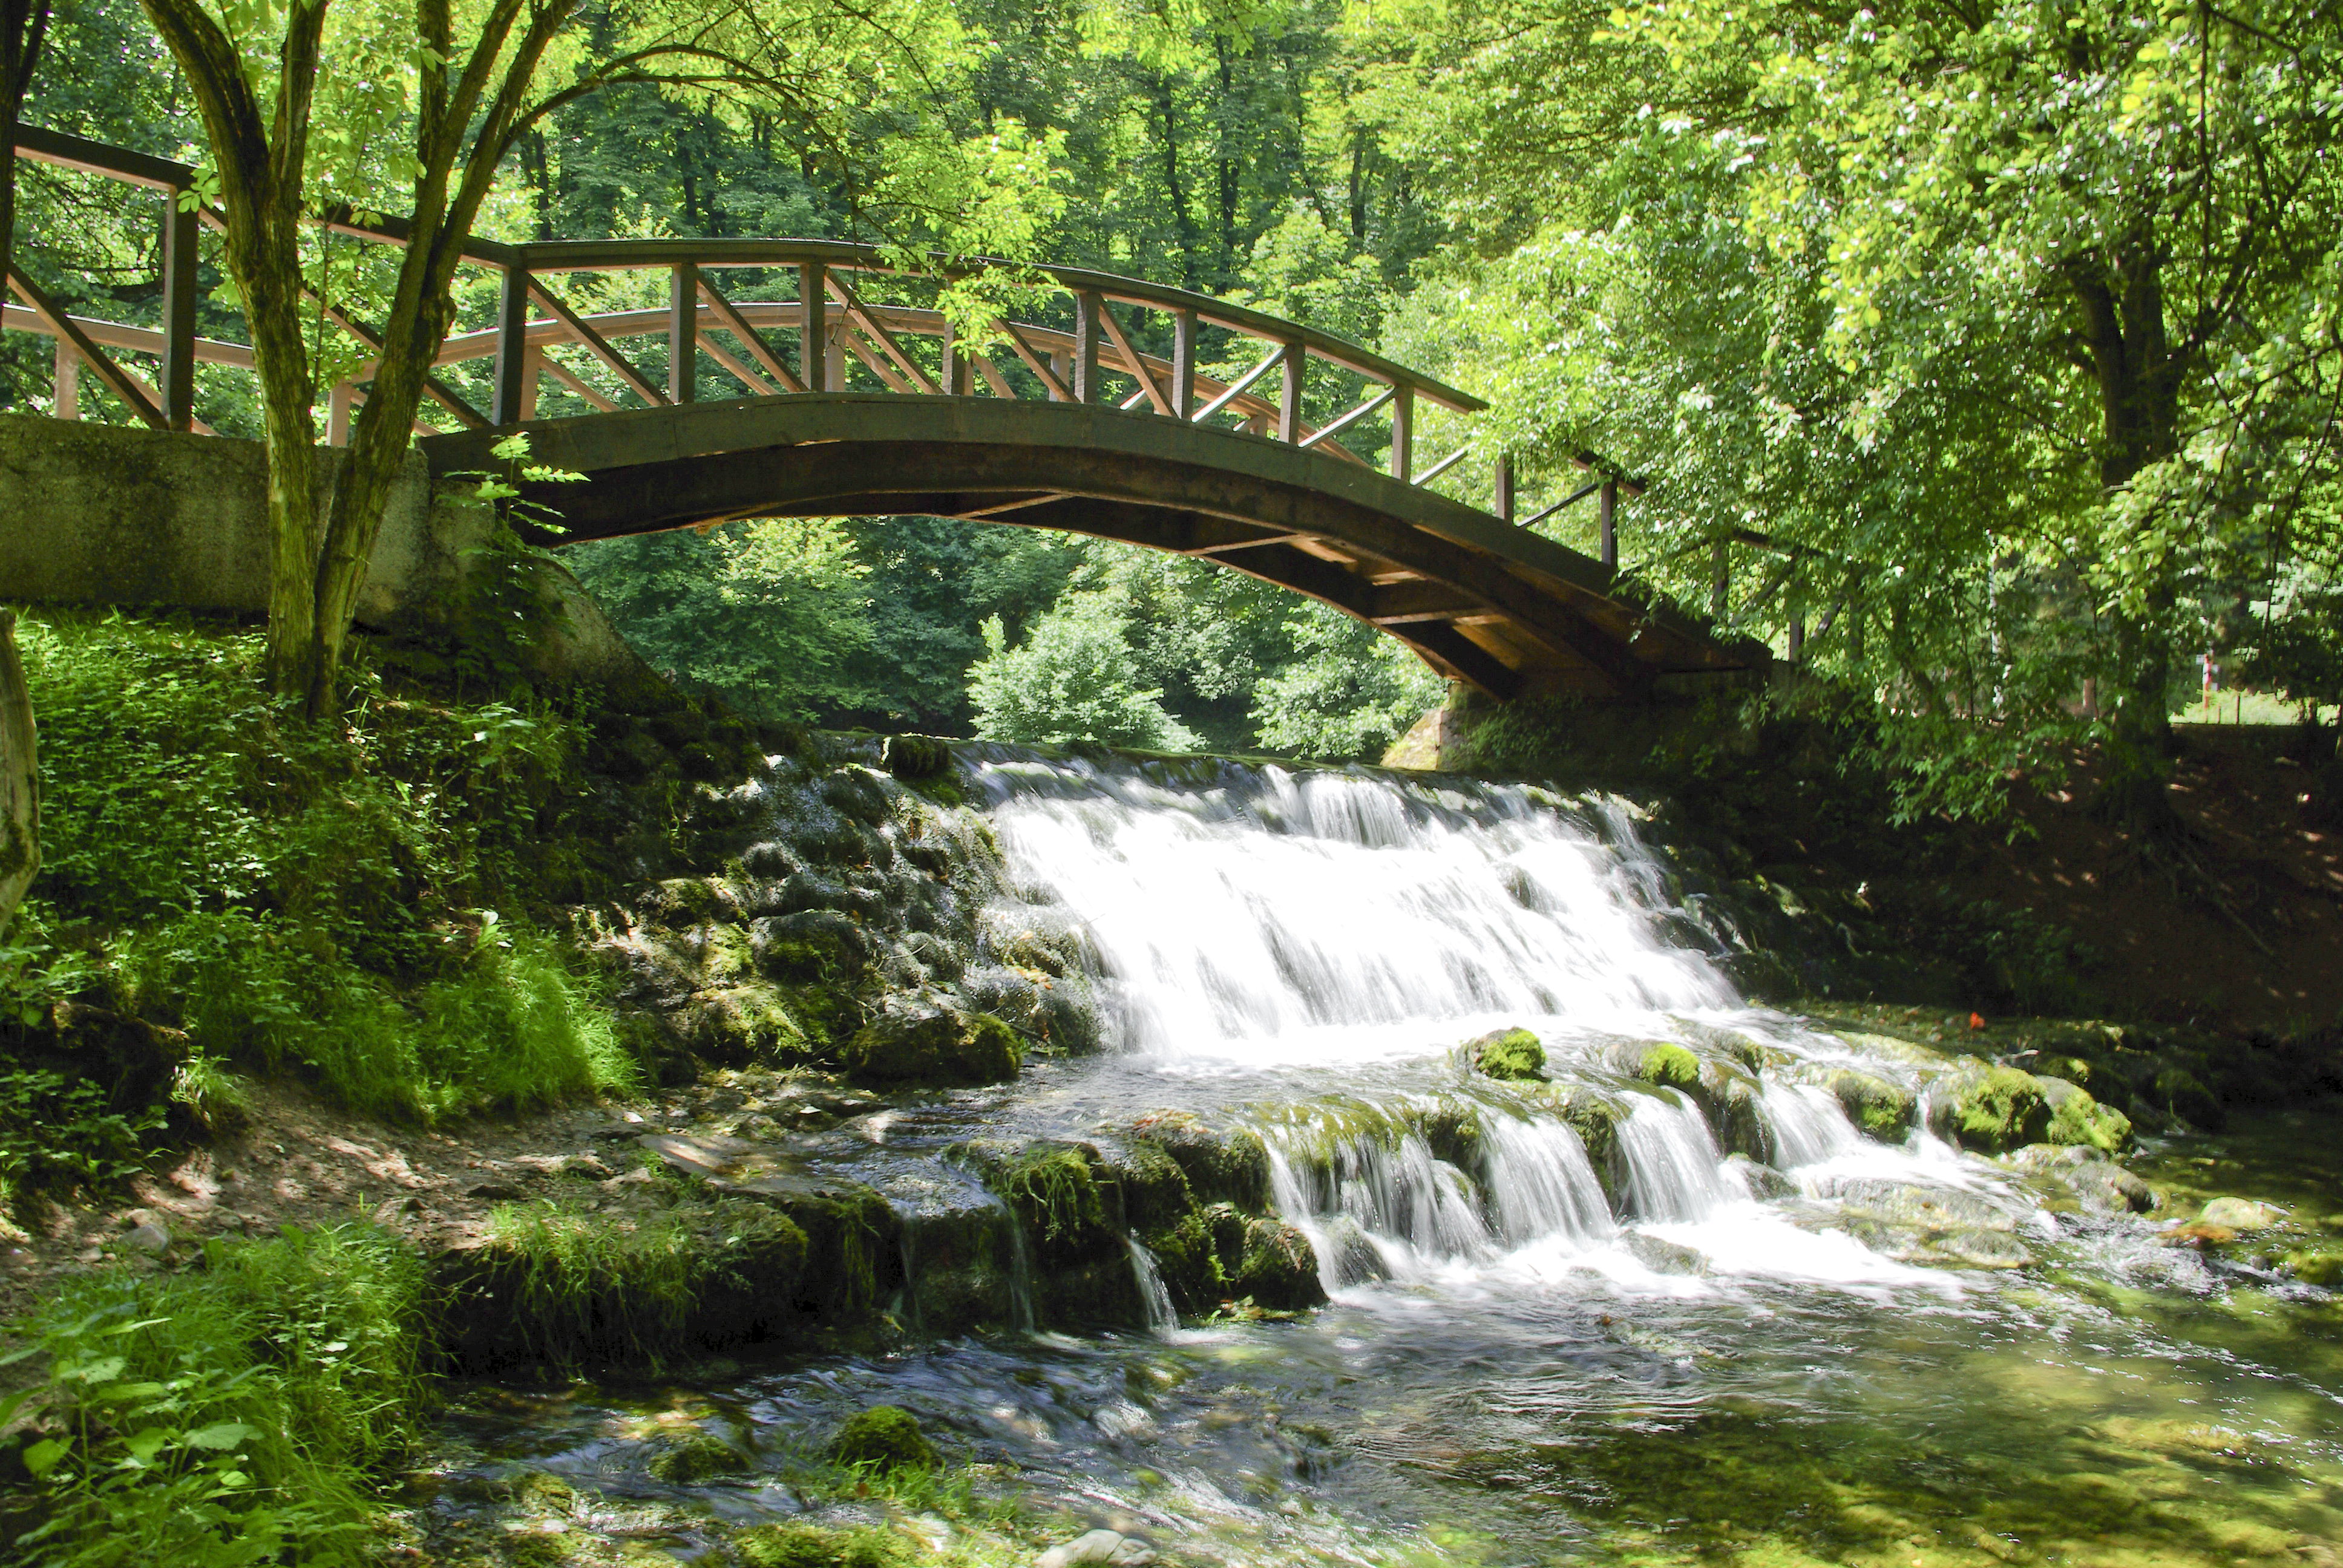 VRELO BOSNE - The spring of river Bosna; SARAJEVO TOURS / BOSNIA TOURS